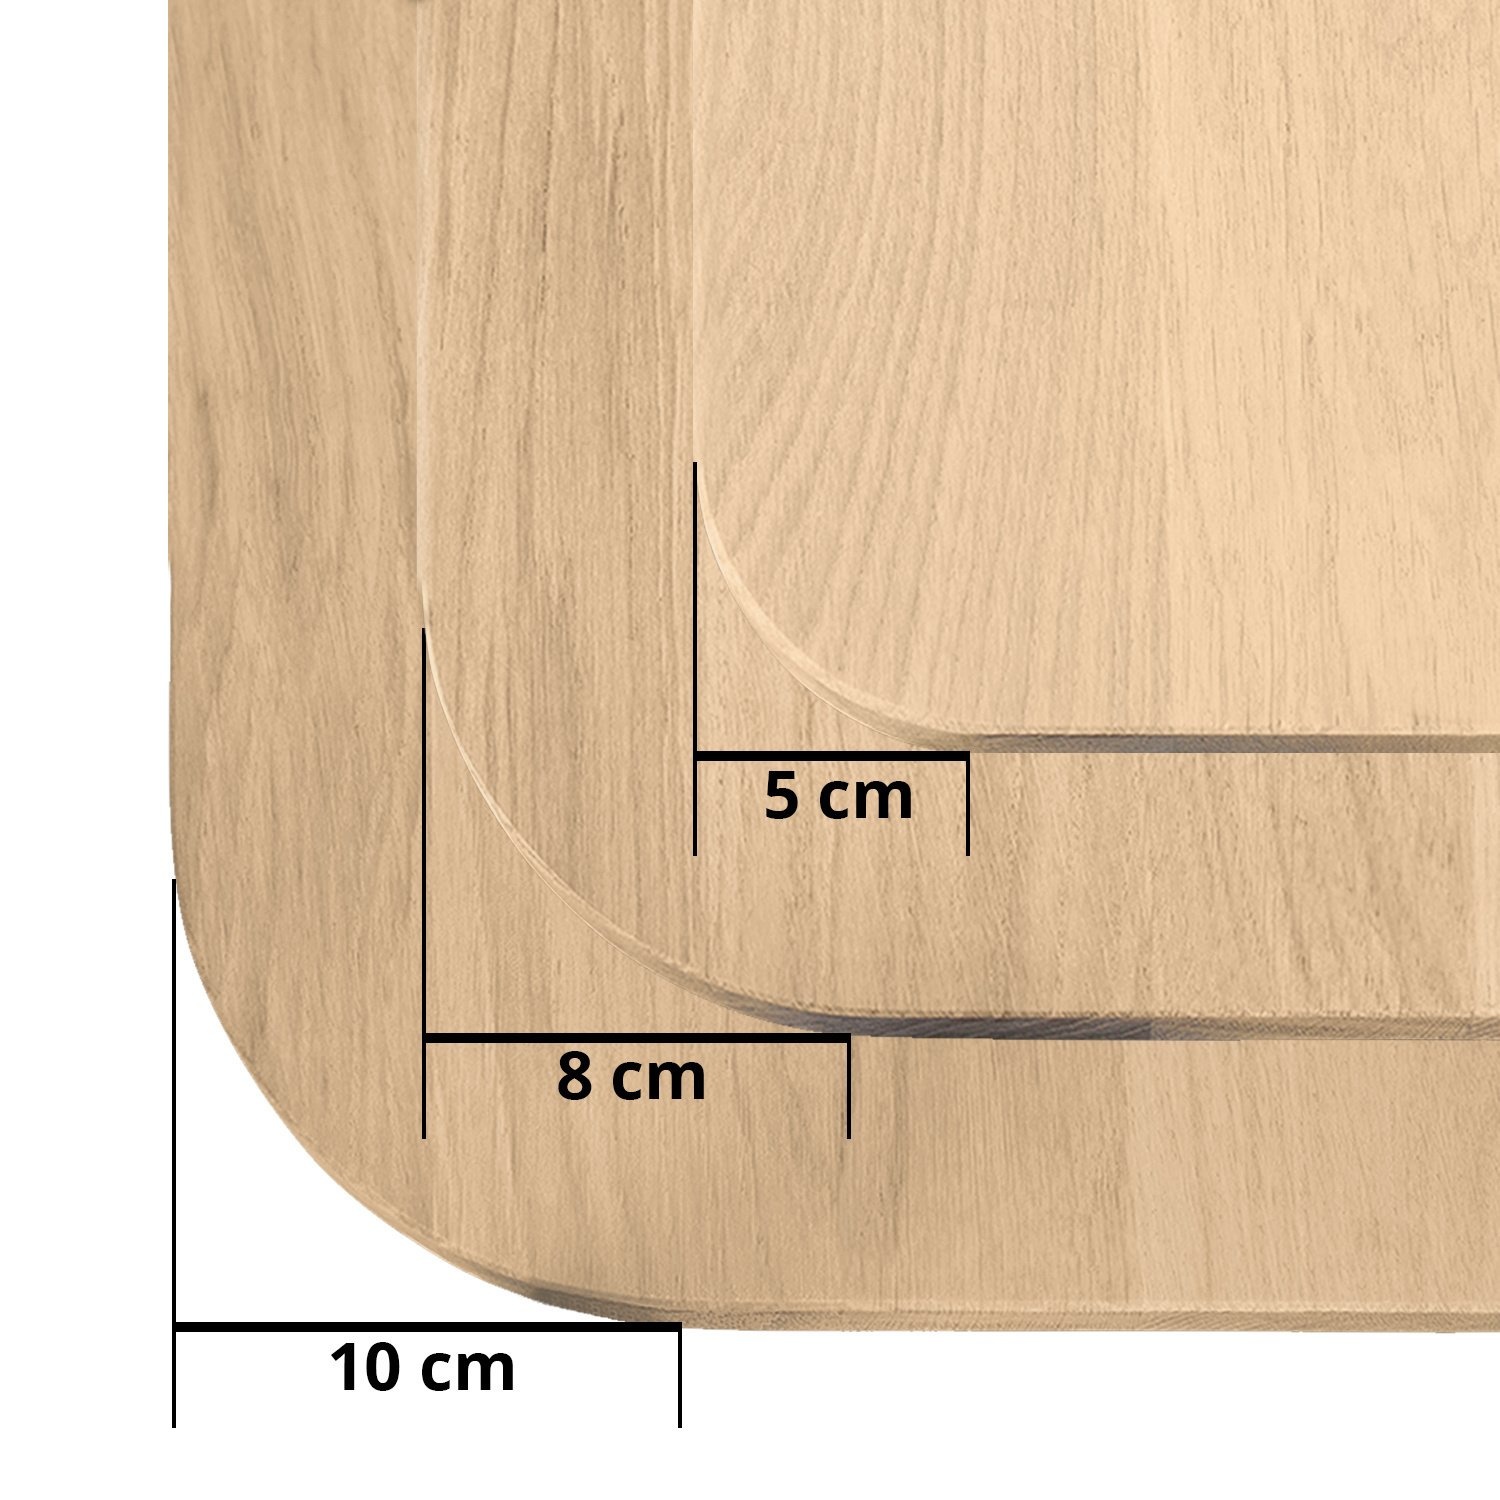  Tischplatte Eiche - mit runden Ecken - 4 cm dick (1-Schicht) - Breite Lamellen (10 - 12 cm breit) - Eichenholz rustikal - verleimt & künstlich getrocknet (HF 8-12%) - mit abgerundeten Kanten - verschiedene Größen